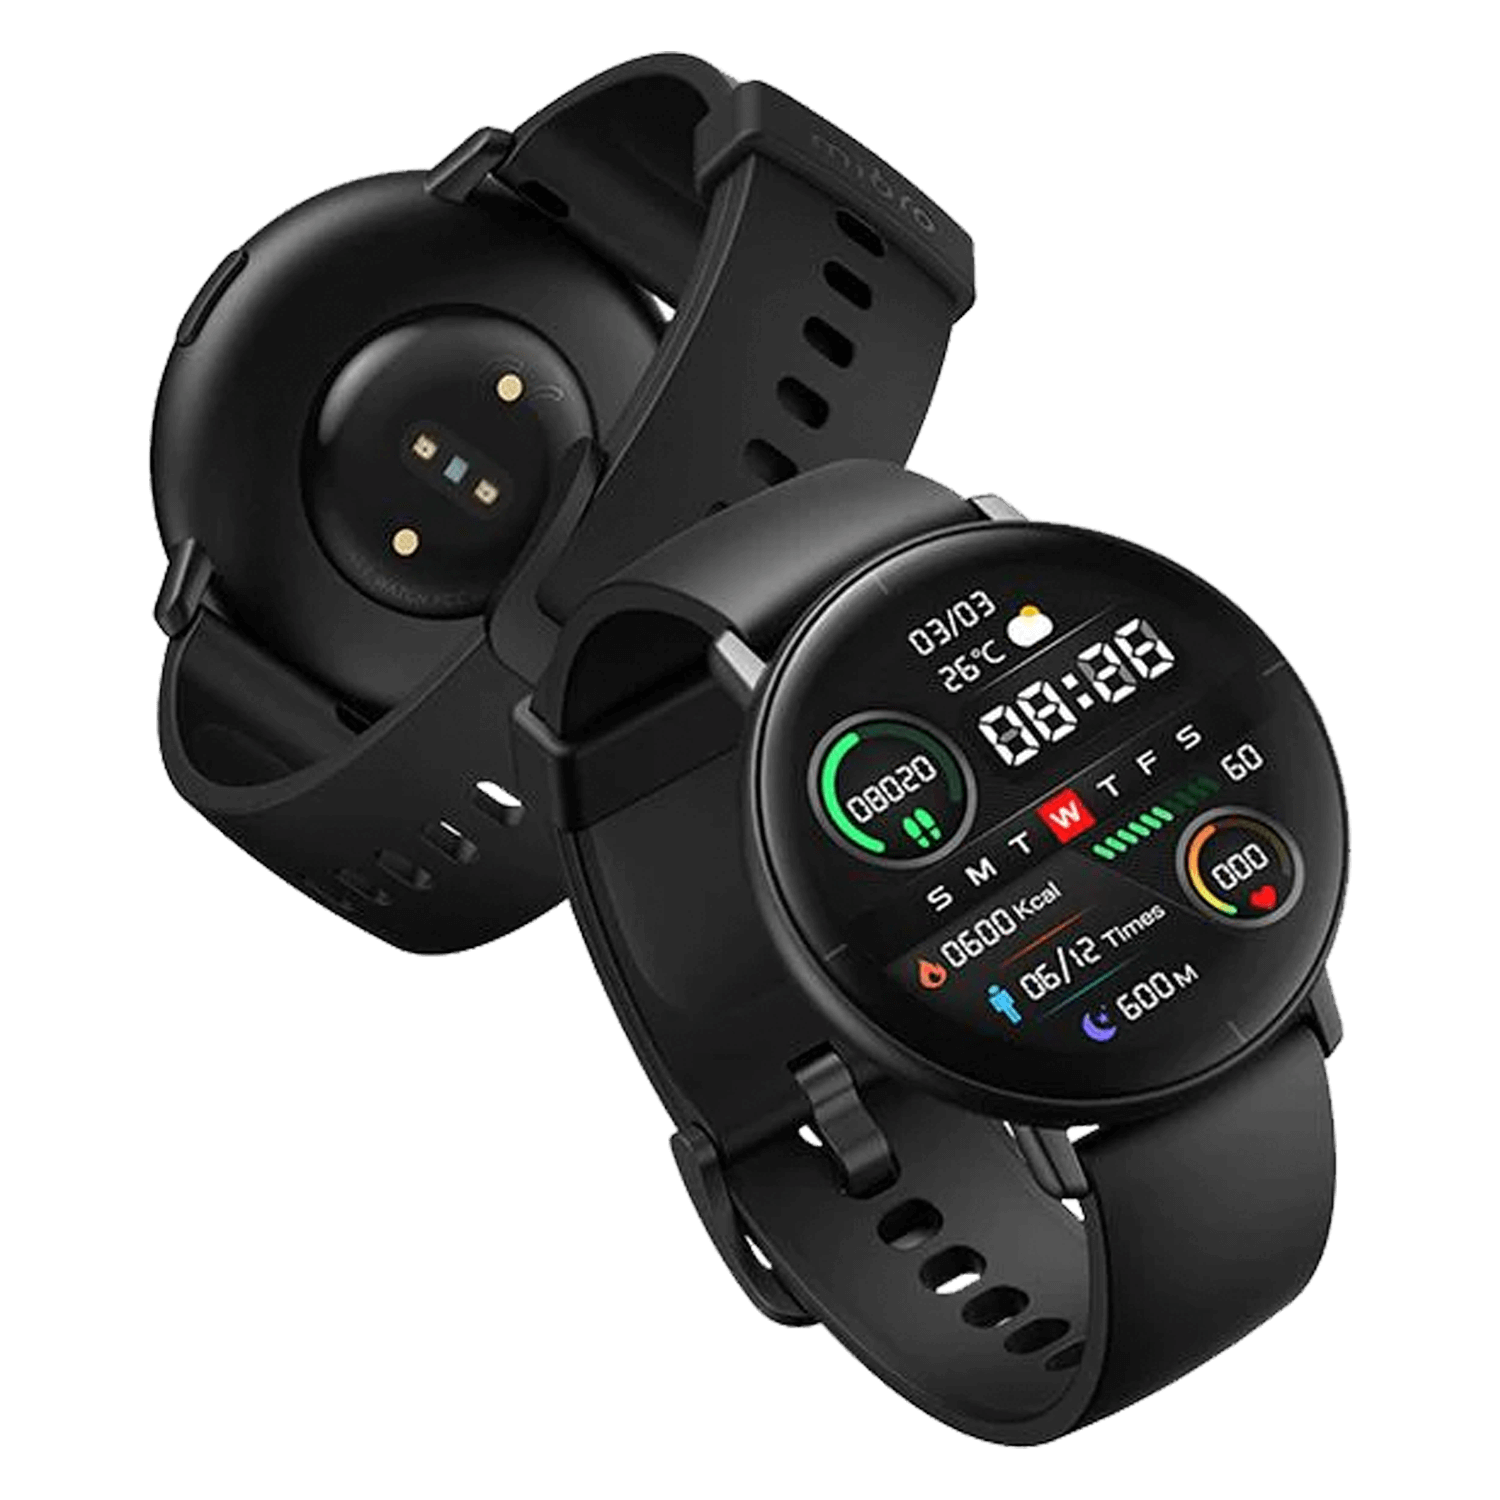 Smartwatch Mibro Lite XPAW004 - Preto